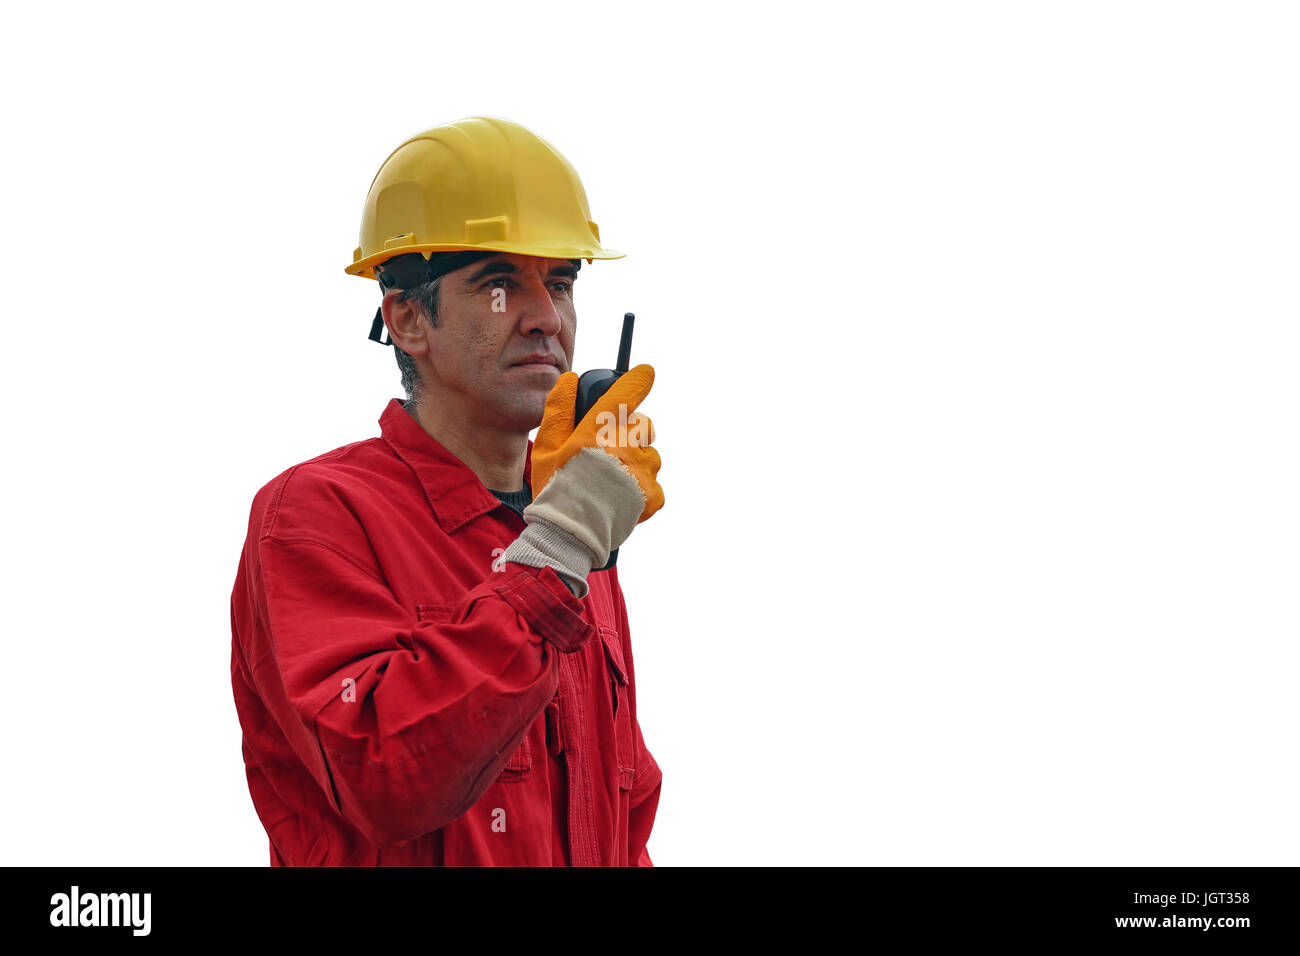 Ein Portrait eines Arbeitnehmers im roten Overall und gelben Helm mit Radio Kommunikationsgerät in seinen Händen. Stockfoto